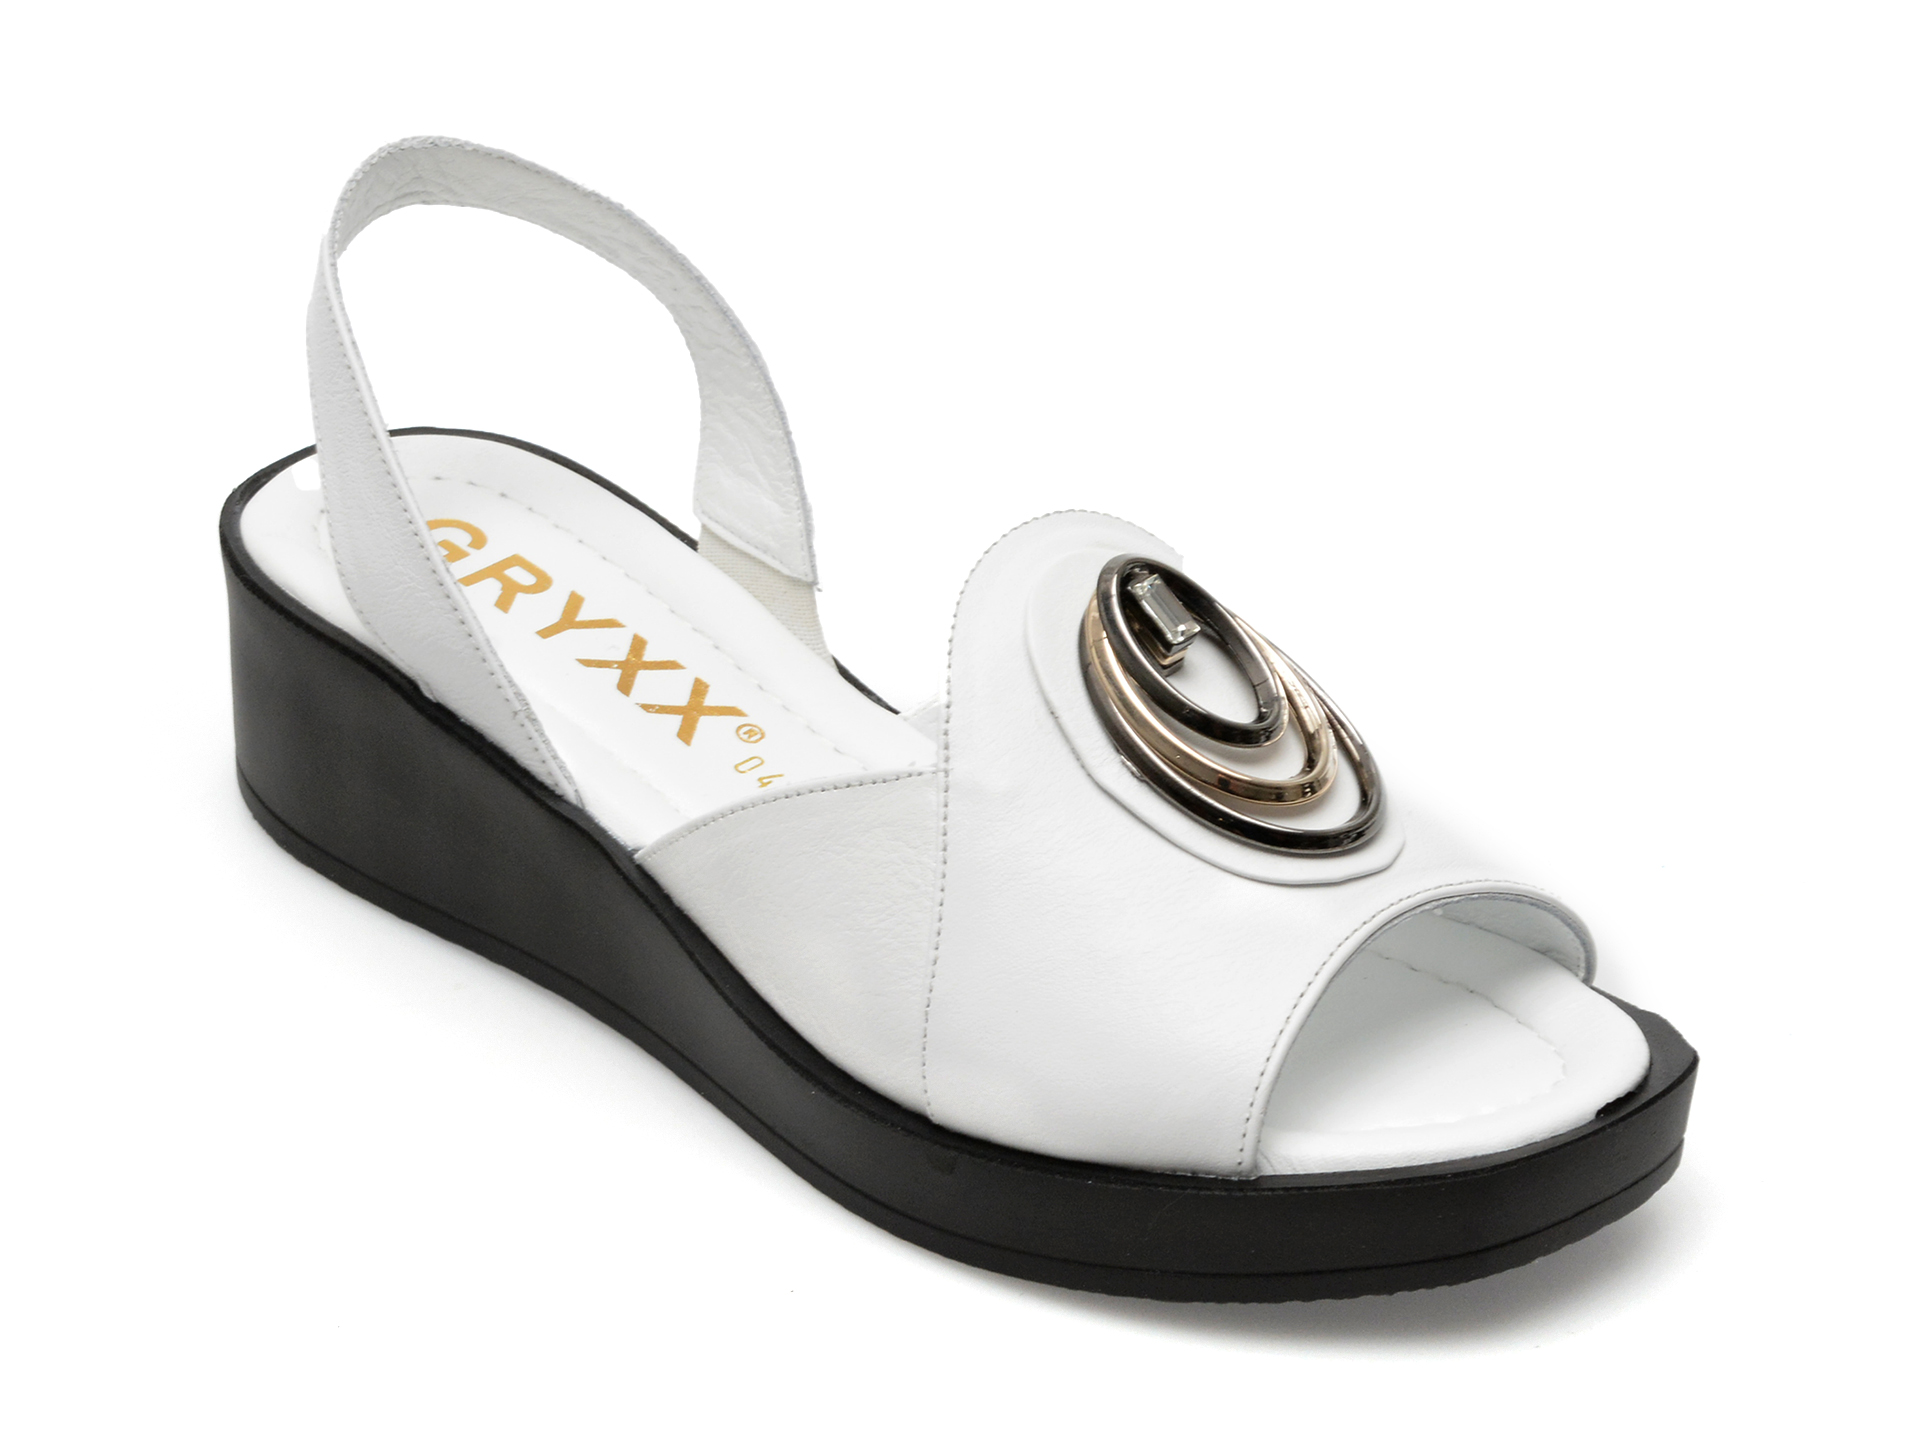 Sandale GRYXX albe, 406083, din piele naturala GRYXX imagine reduceri